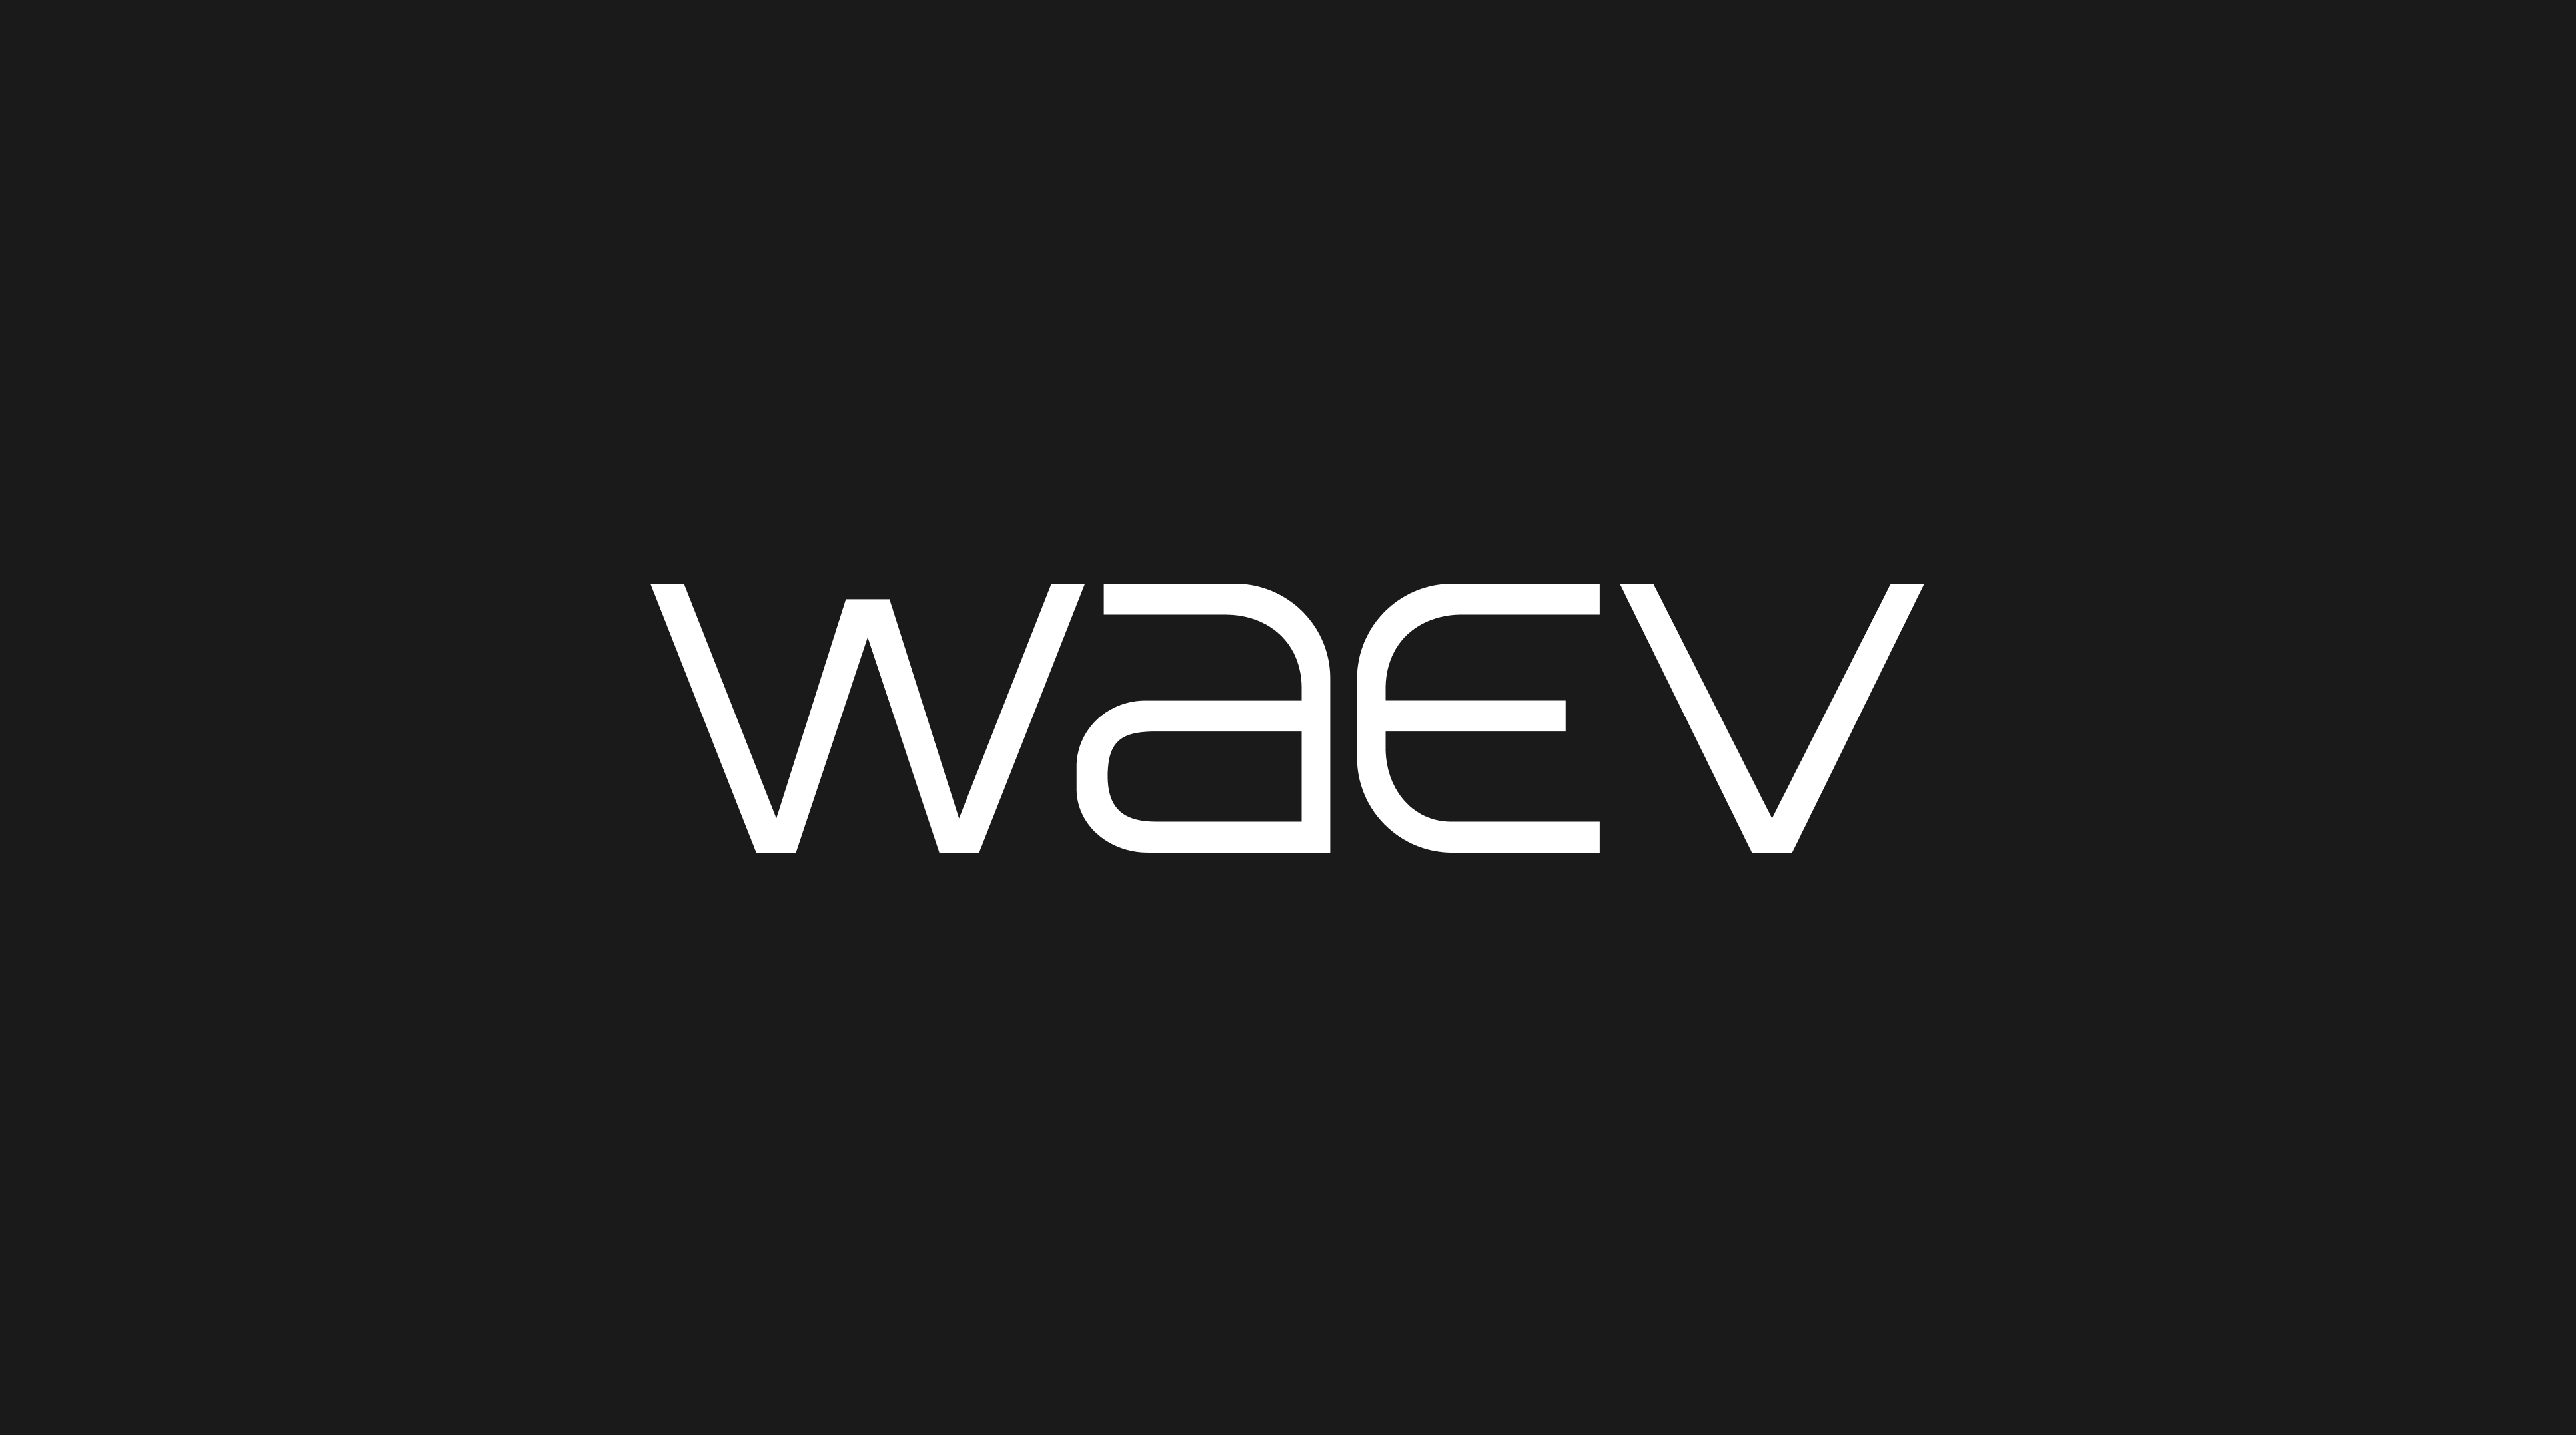 WAEV logo